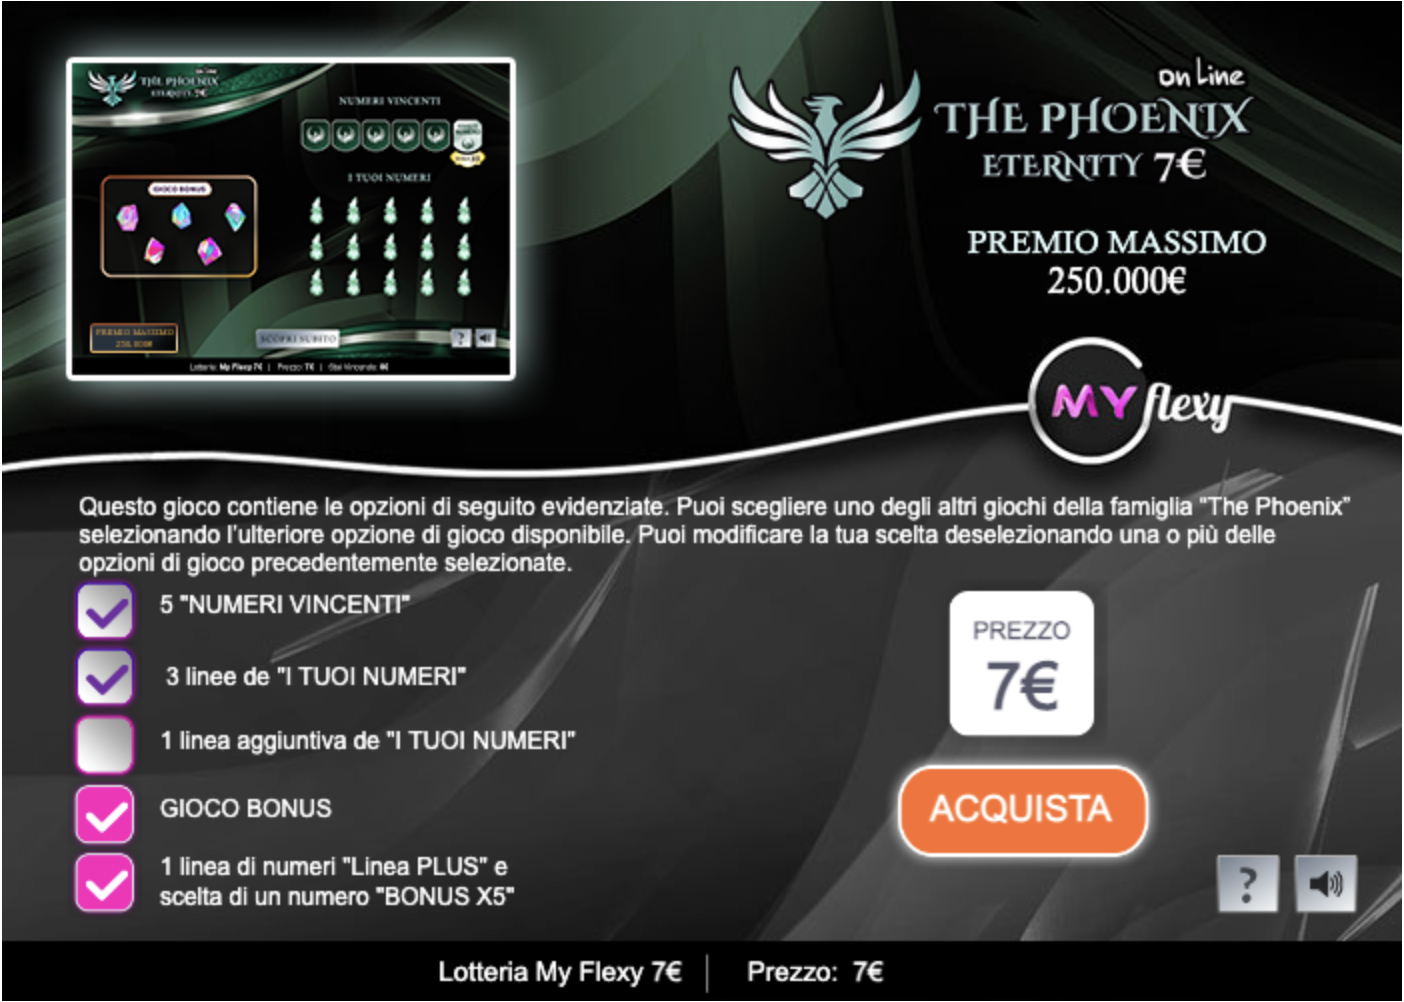 The Phoenix Eternity 7€ - online